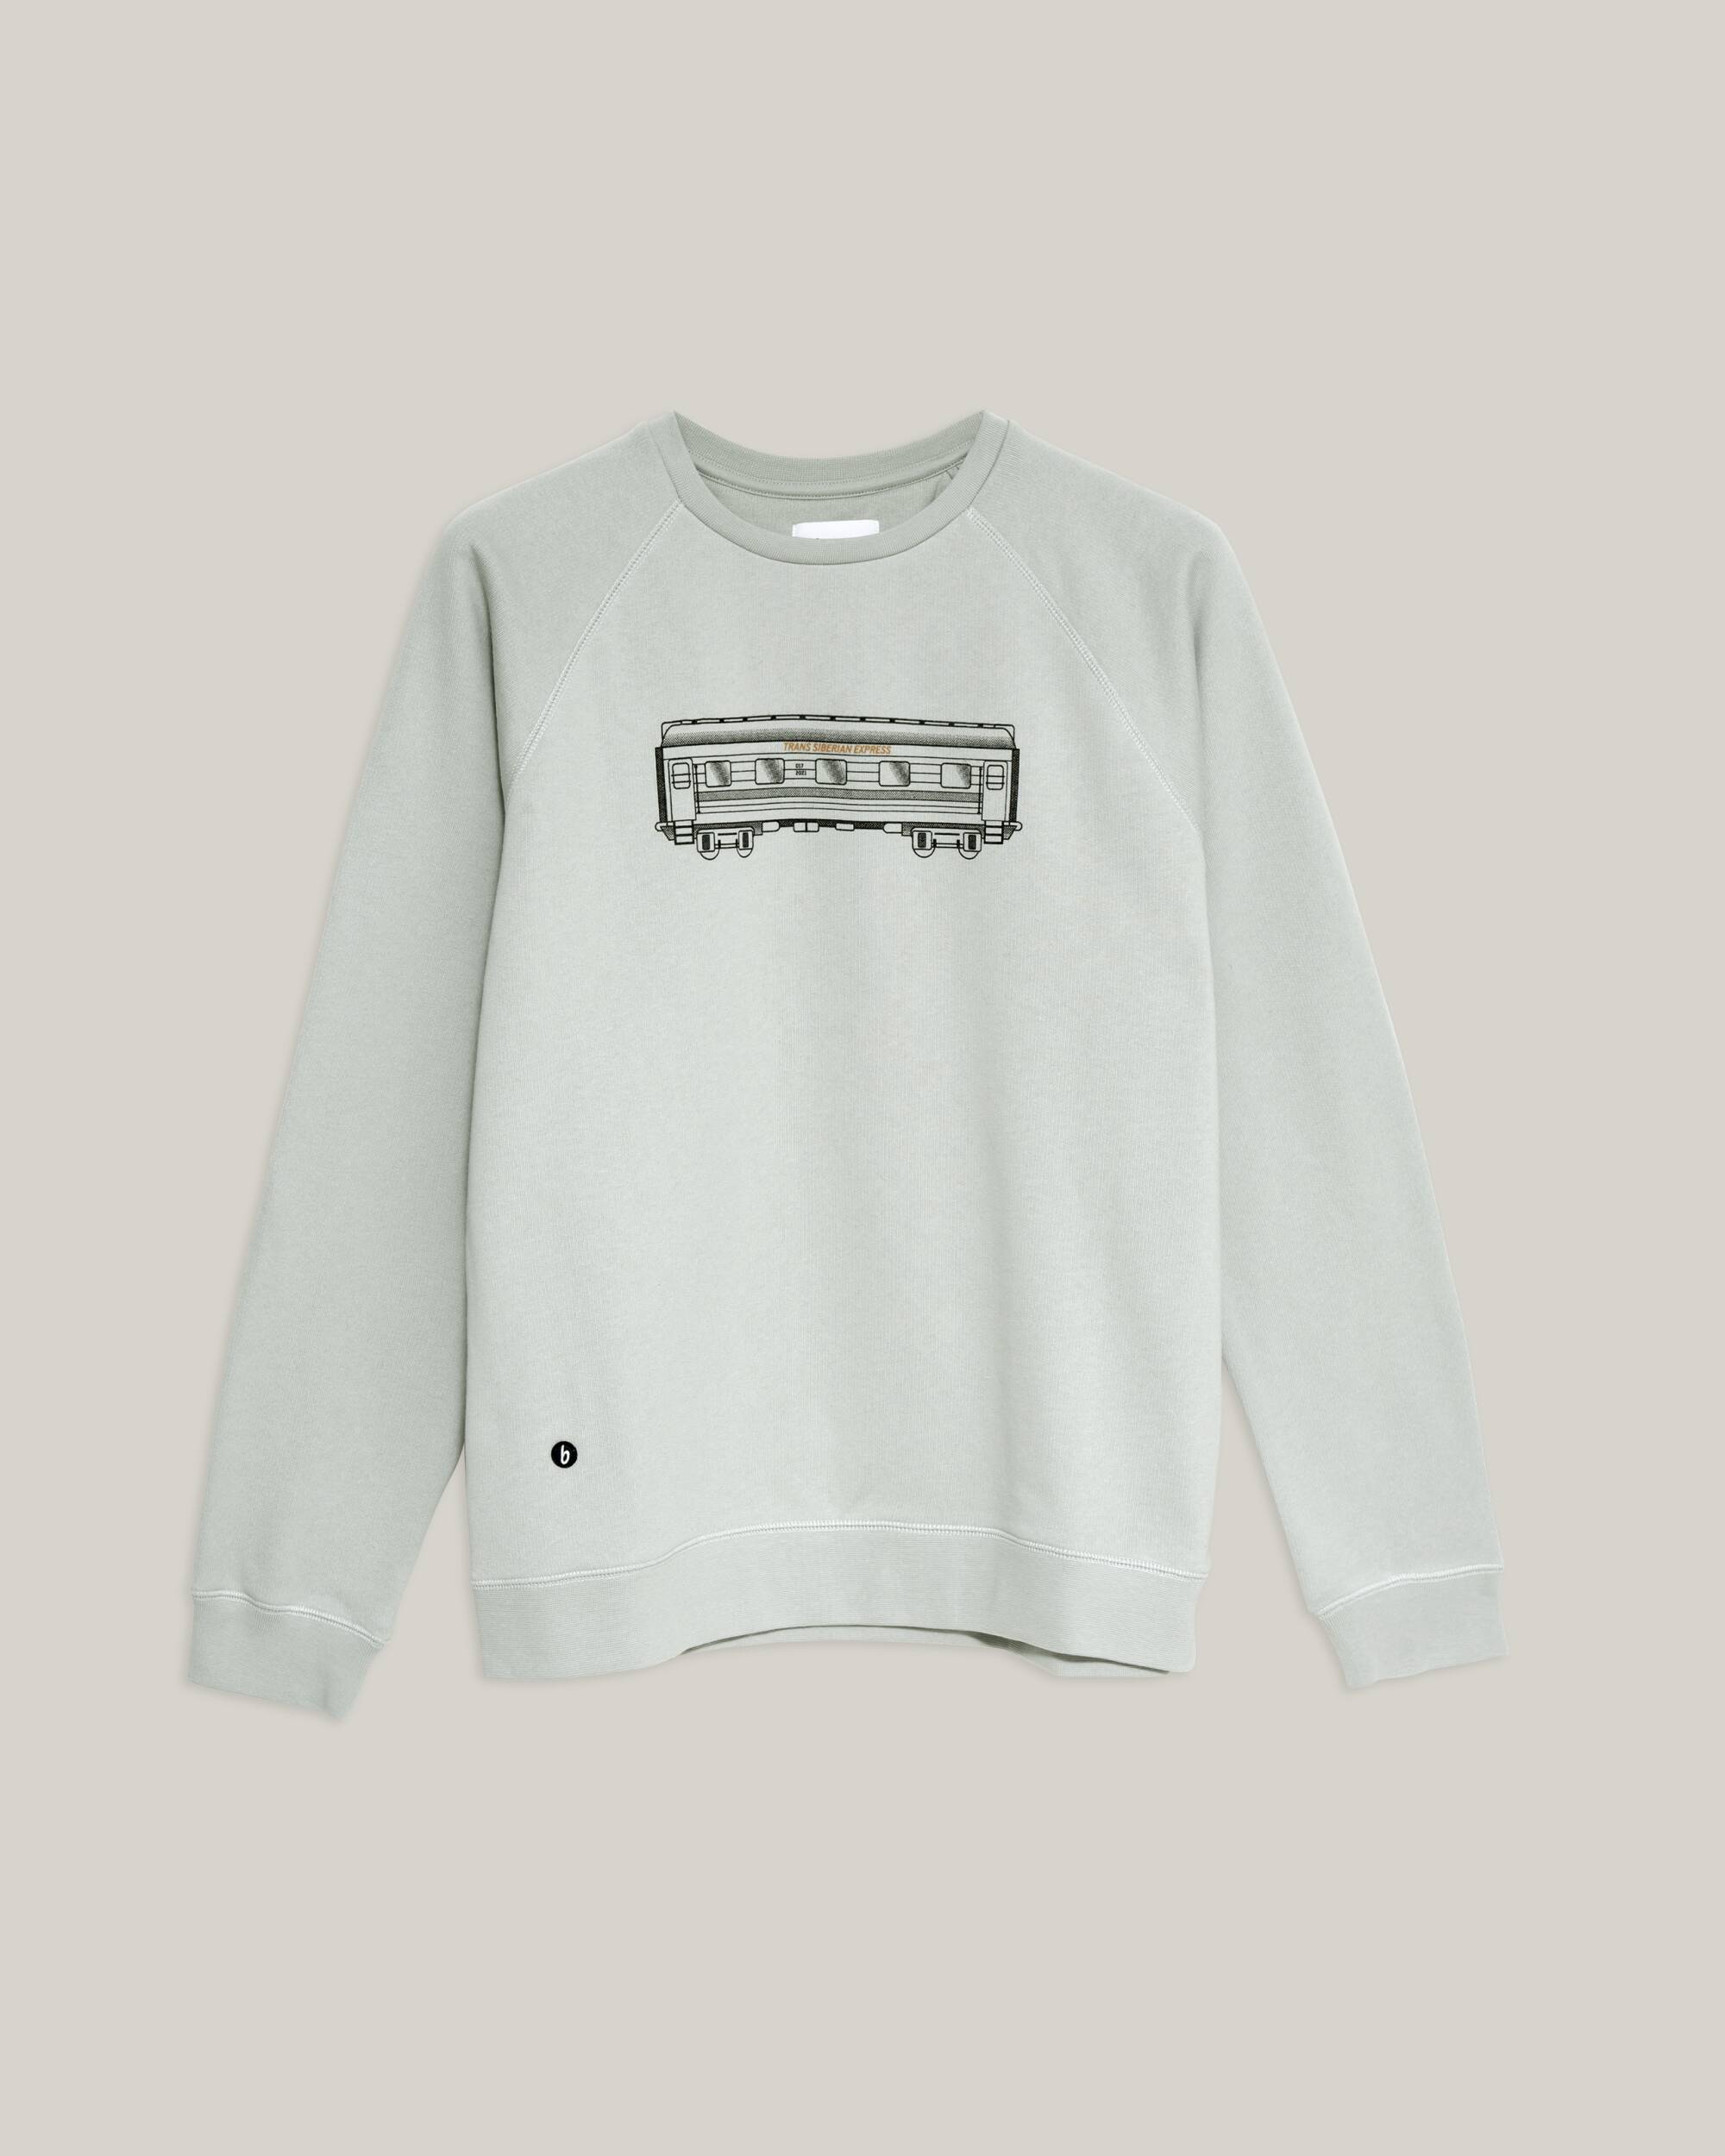 Sweat-shirt "Wagon" gris en coton 100% biologique de Brava Fabrics